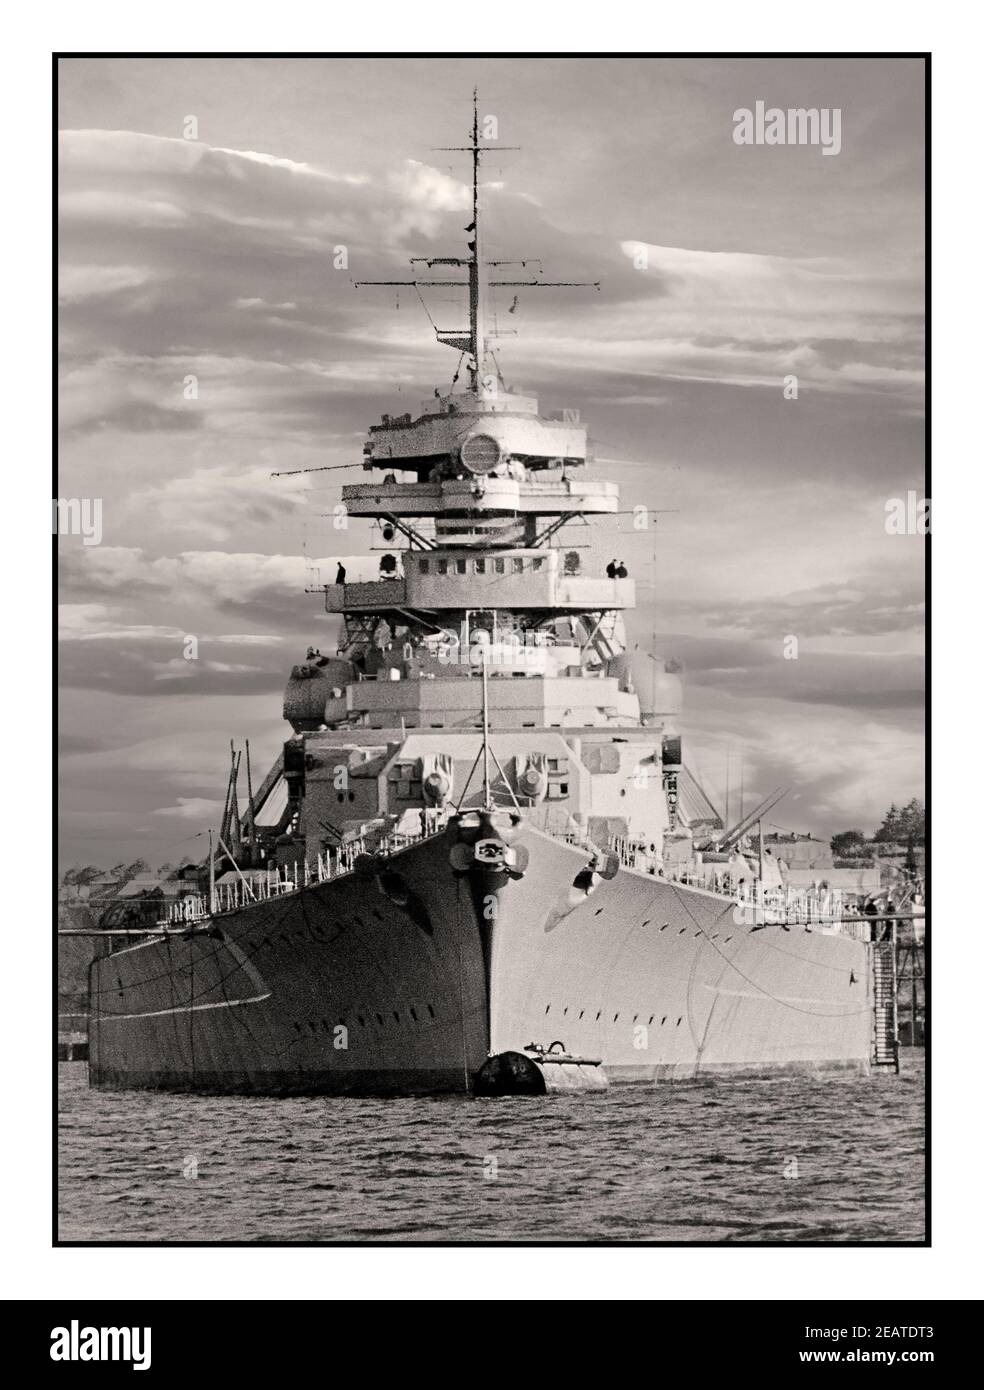 BISMARCK WW2 Nazi Germany Navy Bismarck Battleship 1940's la corazzata tedesca Bismarck fu costruita dalla Germania nazista. Fu una delle navi da guerra più famose e riconosciute della seconda guerra mondiale Ha navigato per una sola missione, conosciuta come operazione 'Rheinübung'. La sua costruzione è iniziata il 1° luglio 1936 in un cantiere navale ad Amburgo, Germania. La nave è stata lanciata il 14 febbraio 1940. La corazzata di classe Bismarck era il più grande tipo di corazzata costruita da qualsiasi potenza europea. La sua nave sorella Tirpitz era la seconda in questa classe. Foto Stock